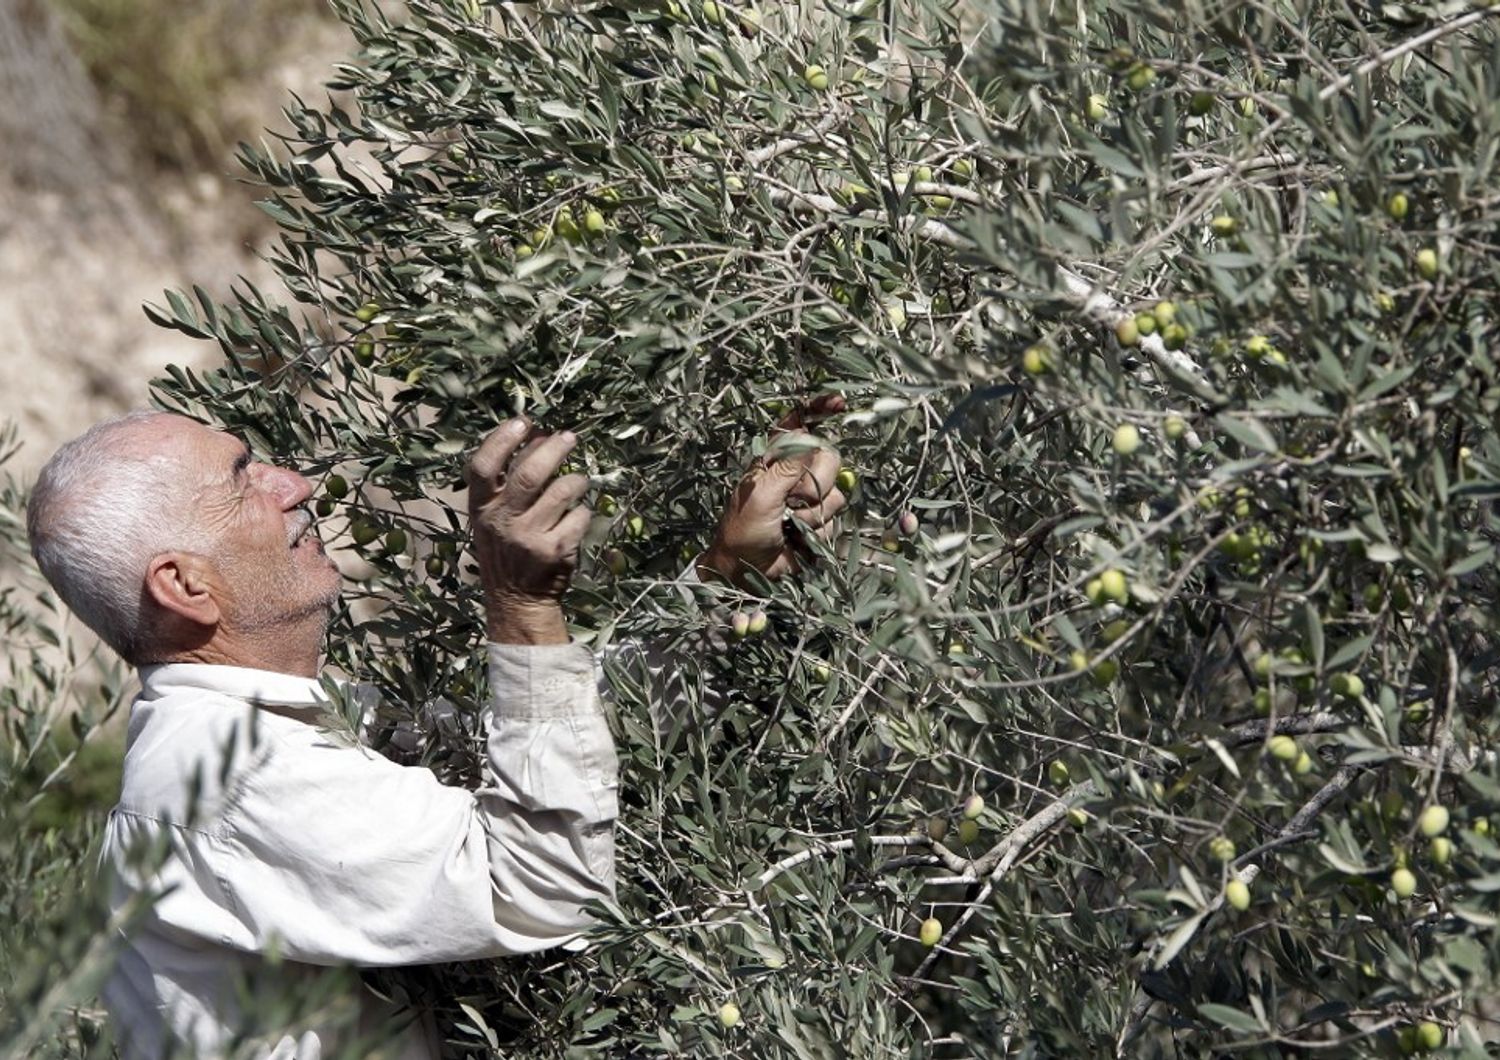 Raccolta olive in Libano